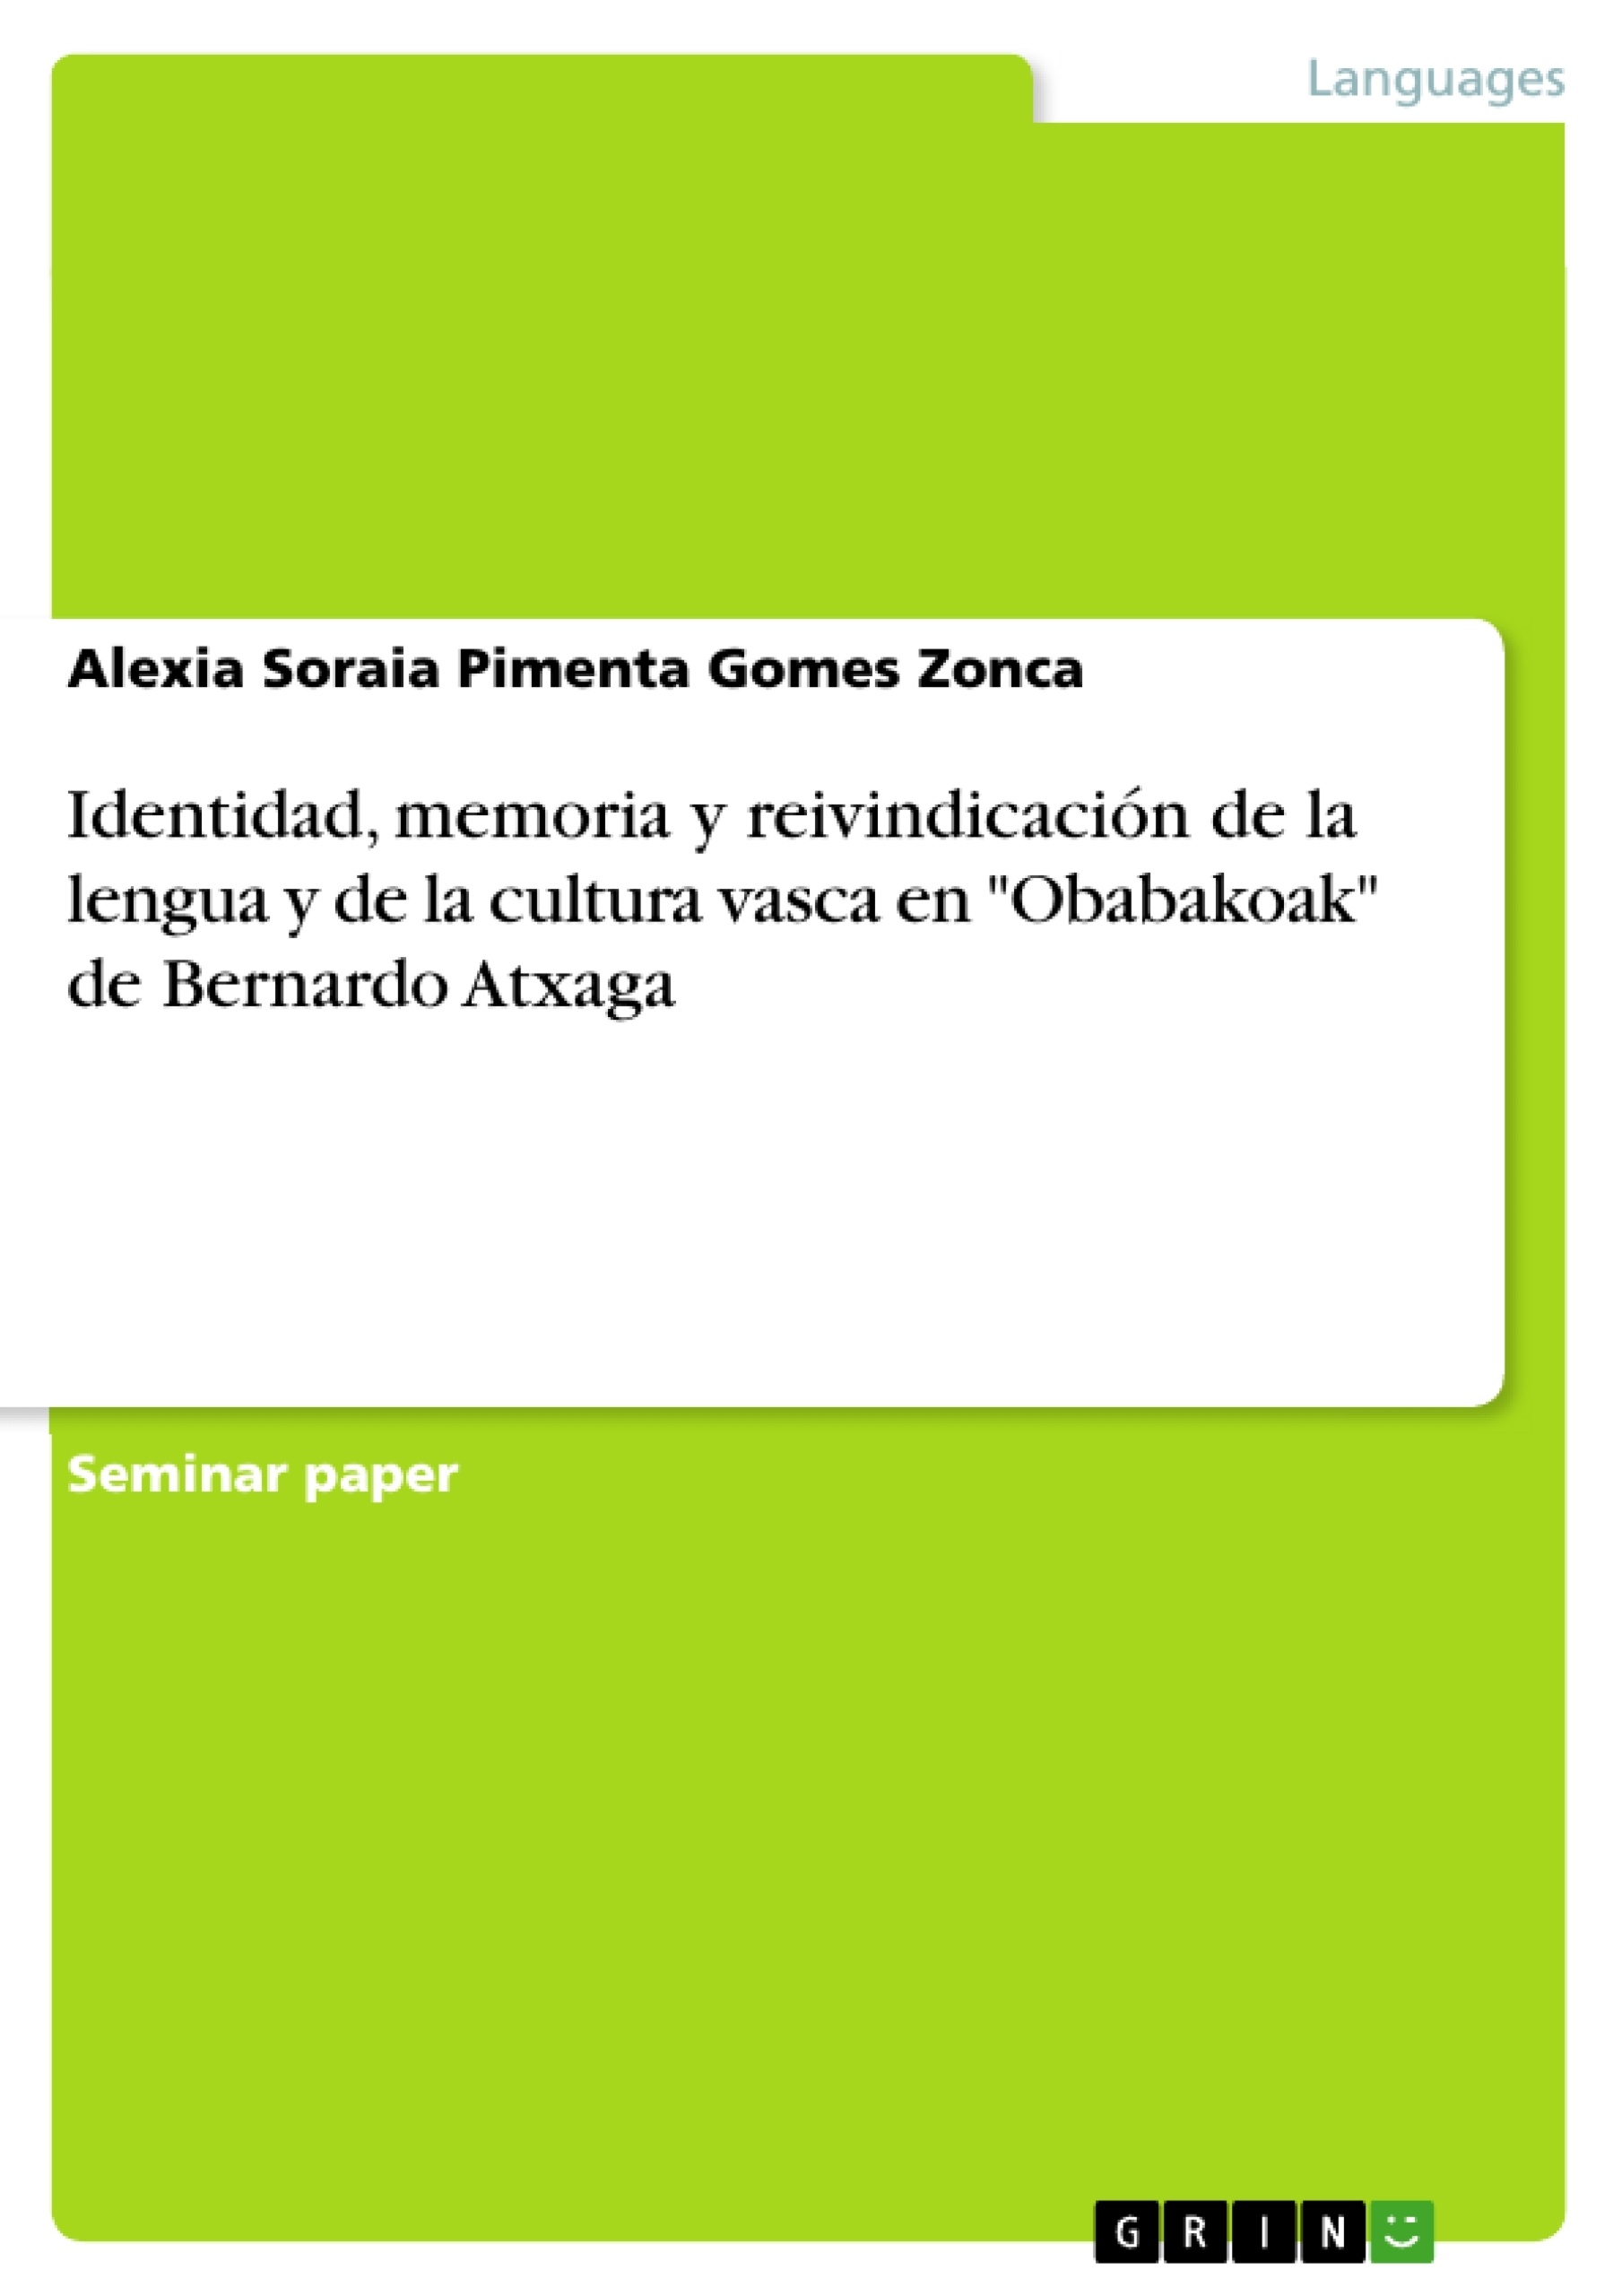 Titre: Identidad, memoria y reivindicación de la lengua y de la cultura vasca en "Obabakoak" de Bernardo Atxaga